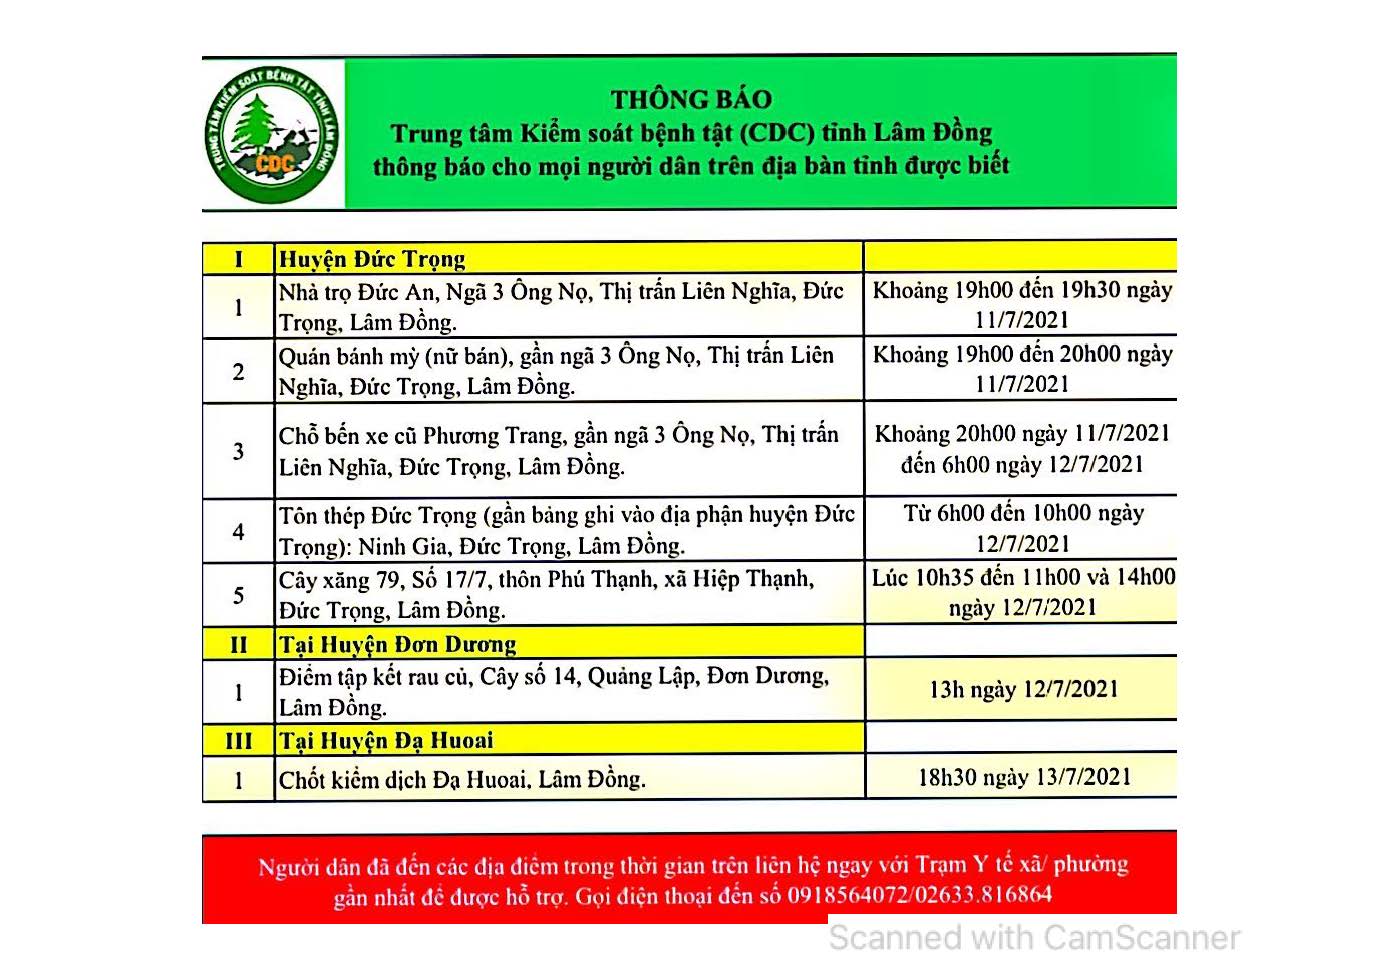 CDC tỉnh Lâm Đồng thông báo cho mọi người dân trên địa bàn tỉnh (cập nhật ngày 16/07/2021)